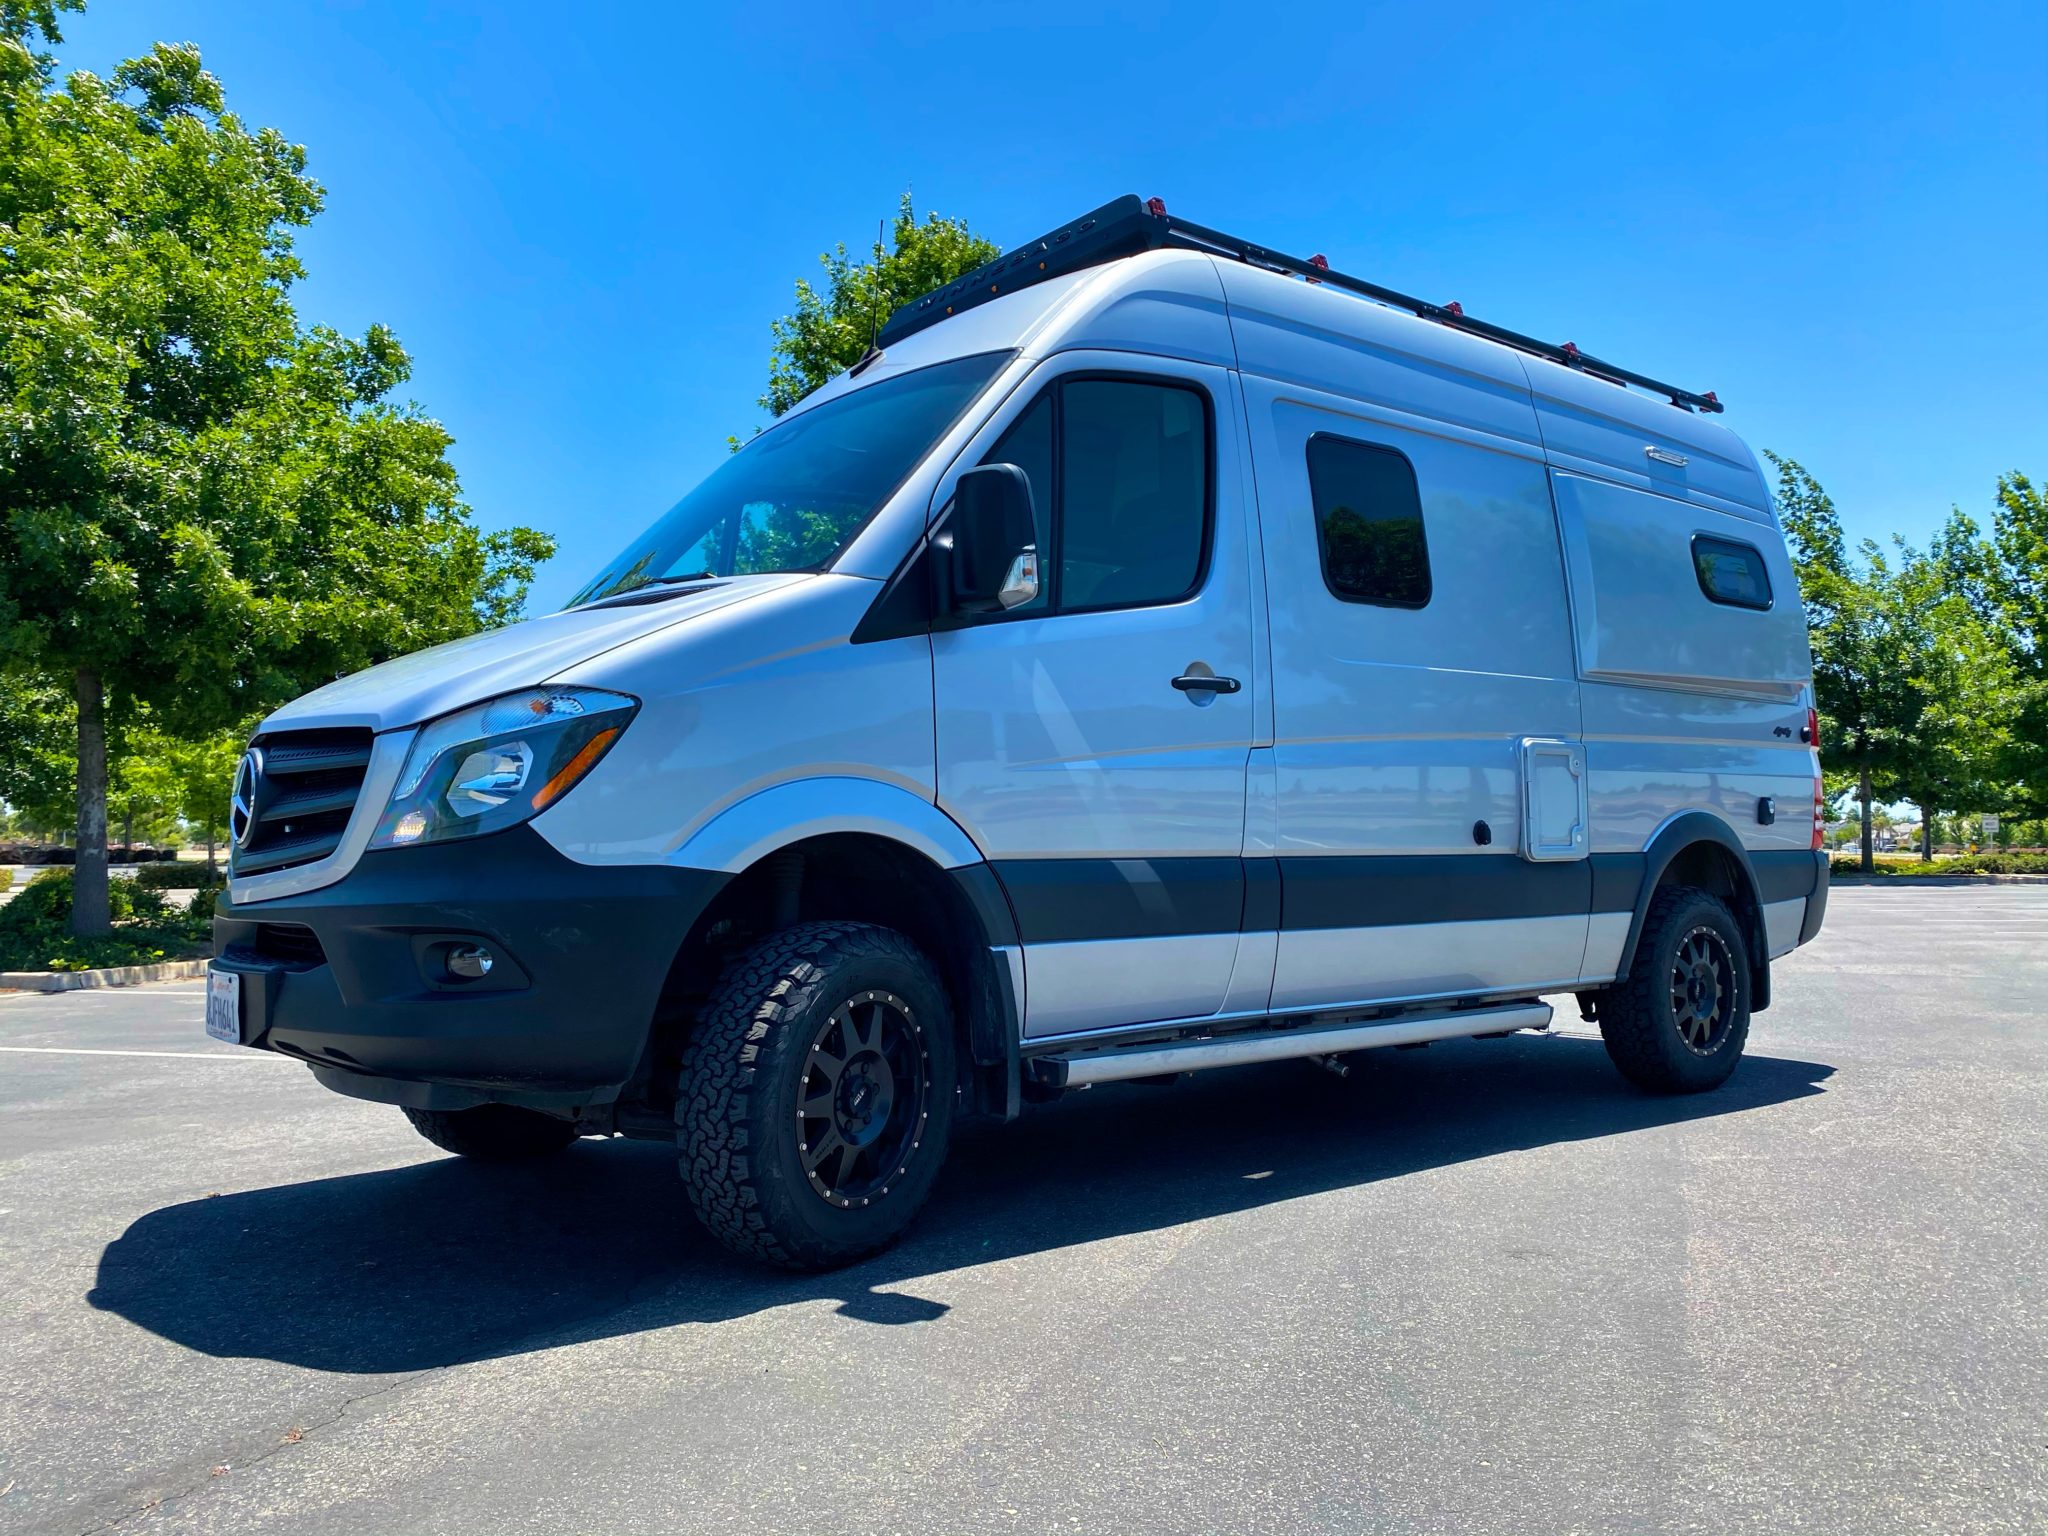 2019 Mercedes Sprinter Camper Van For Sale in Clovis, California Van